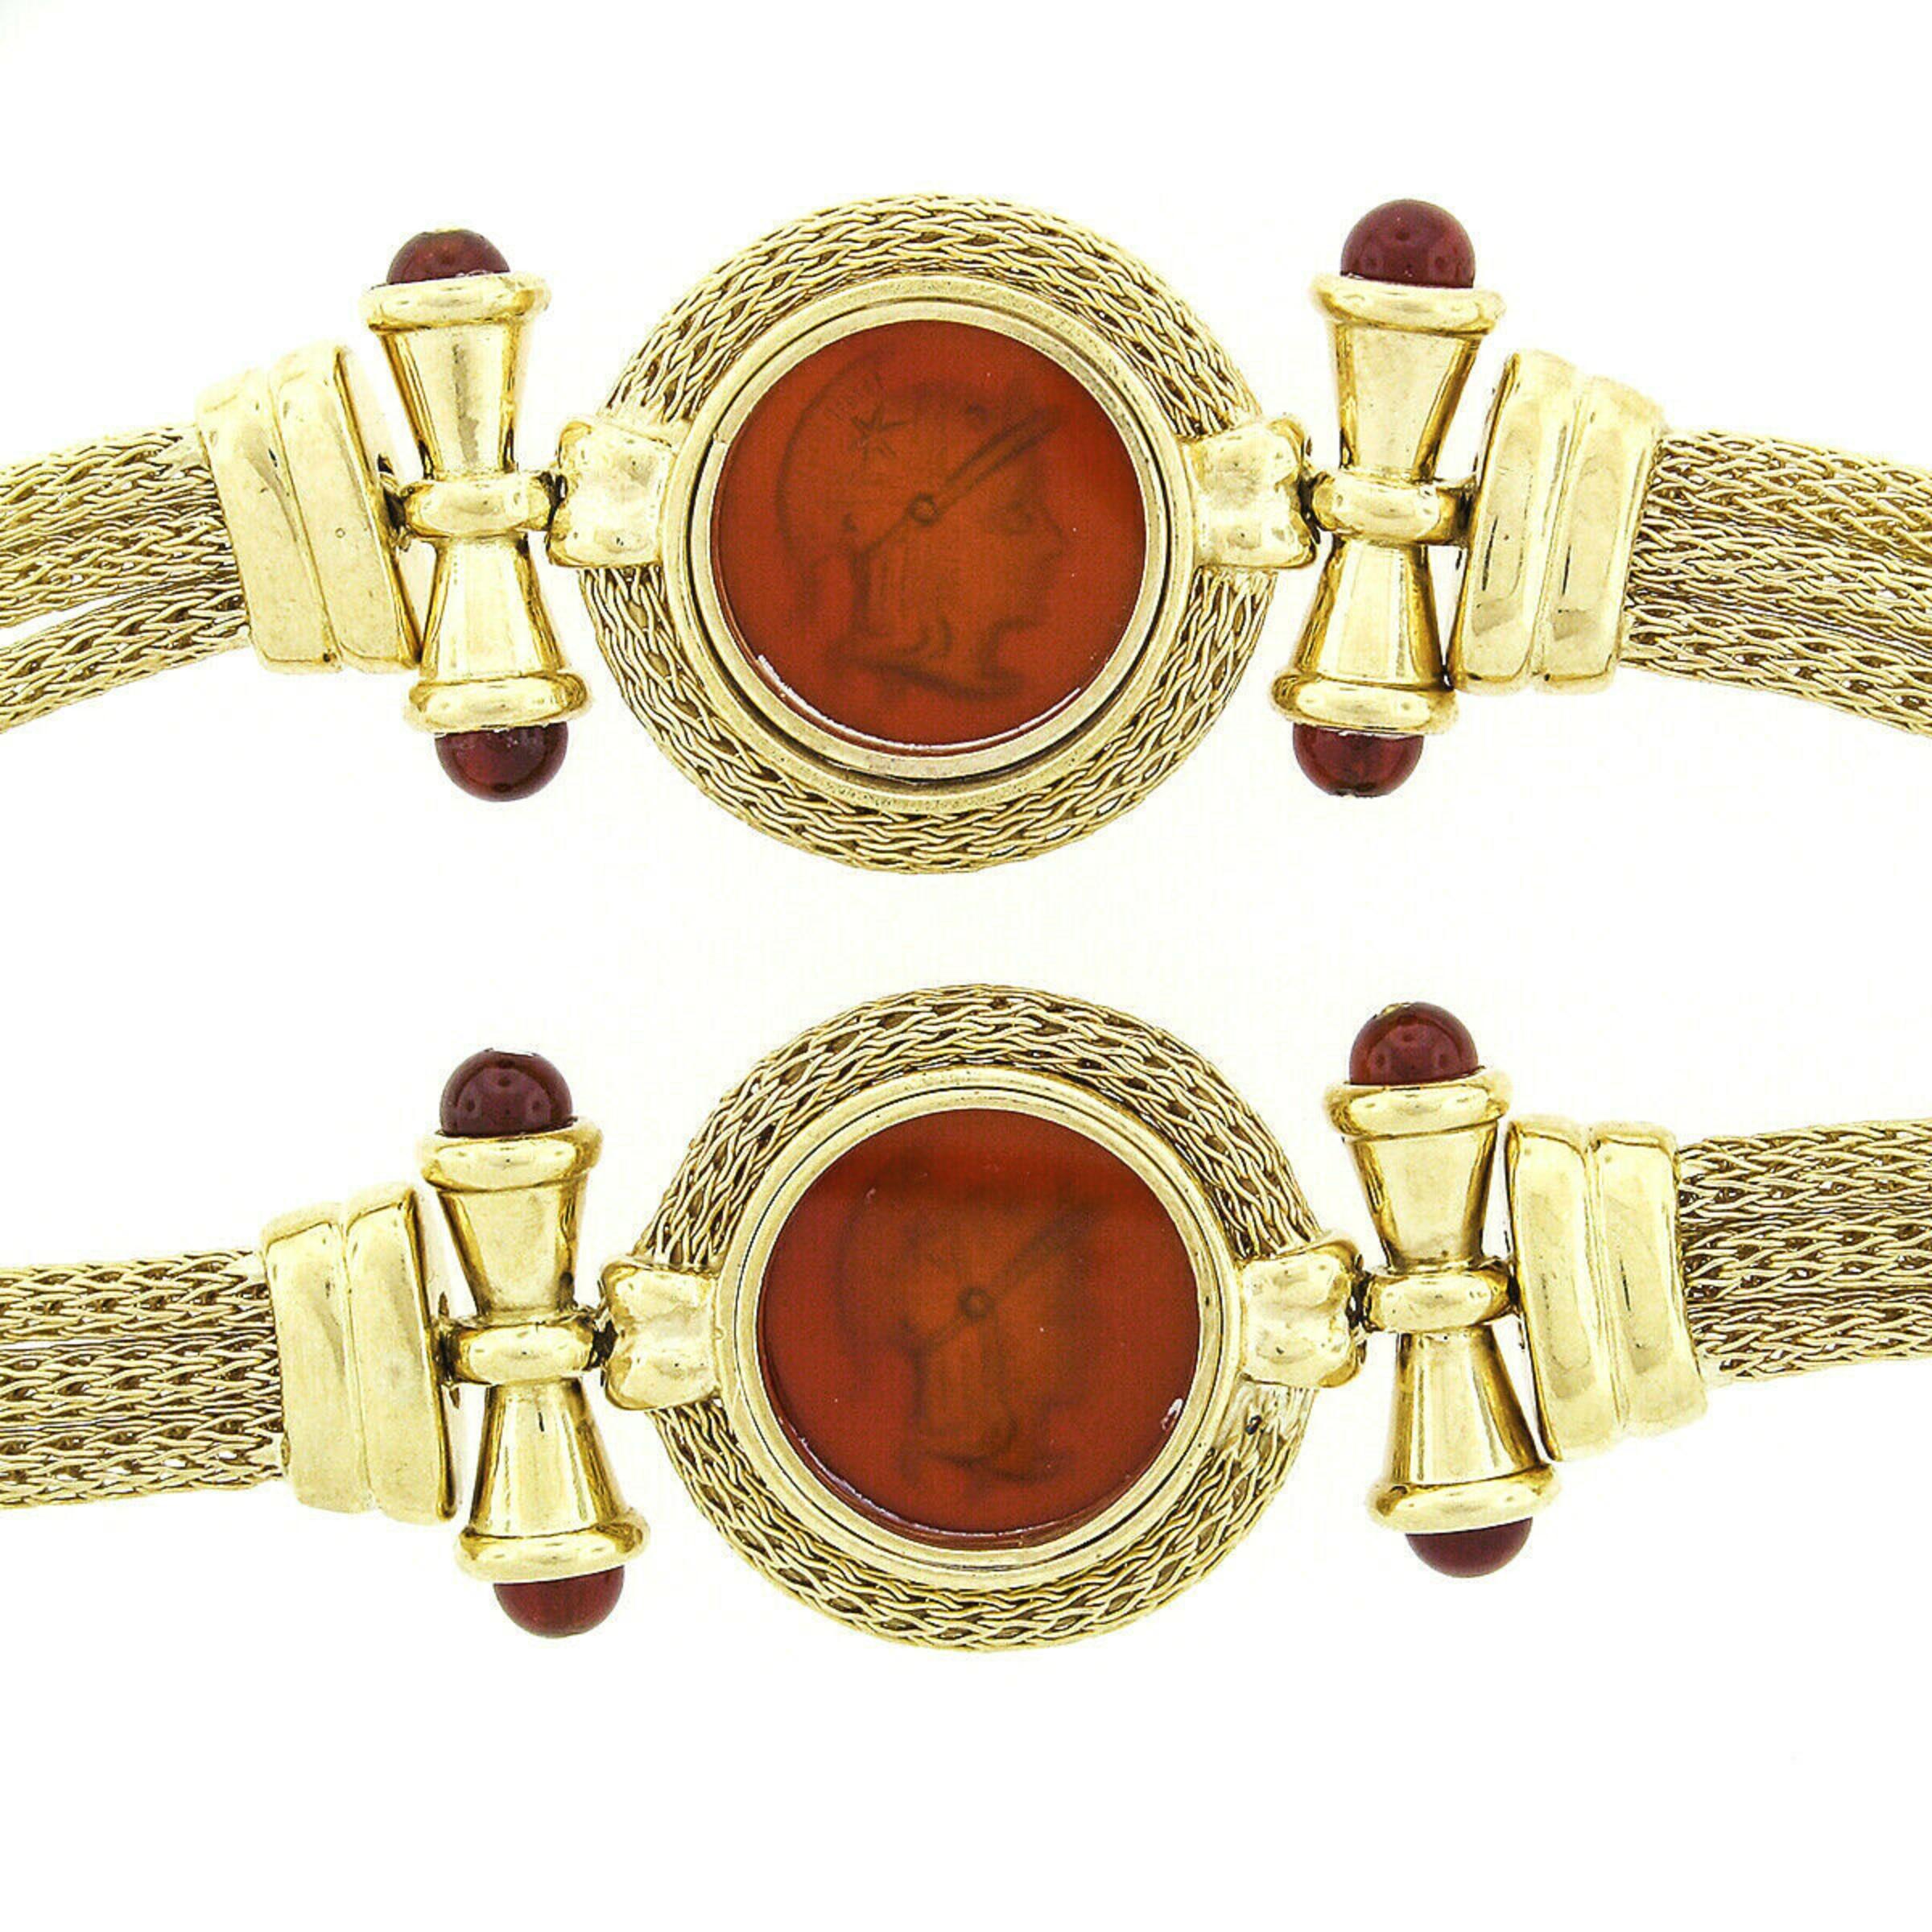 Nuovi Gioielli 18k Gold Mesh Carnelian Intaglio Necklace & Bracelet Suite Set For Sale 2